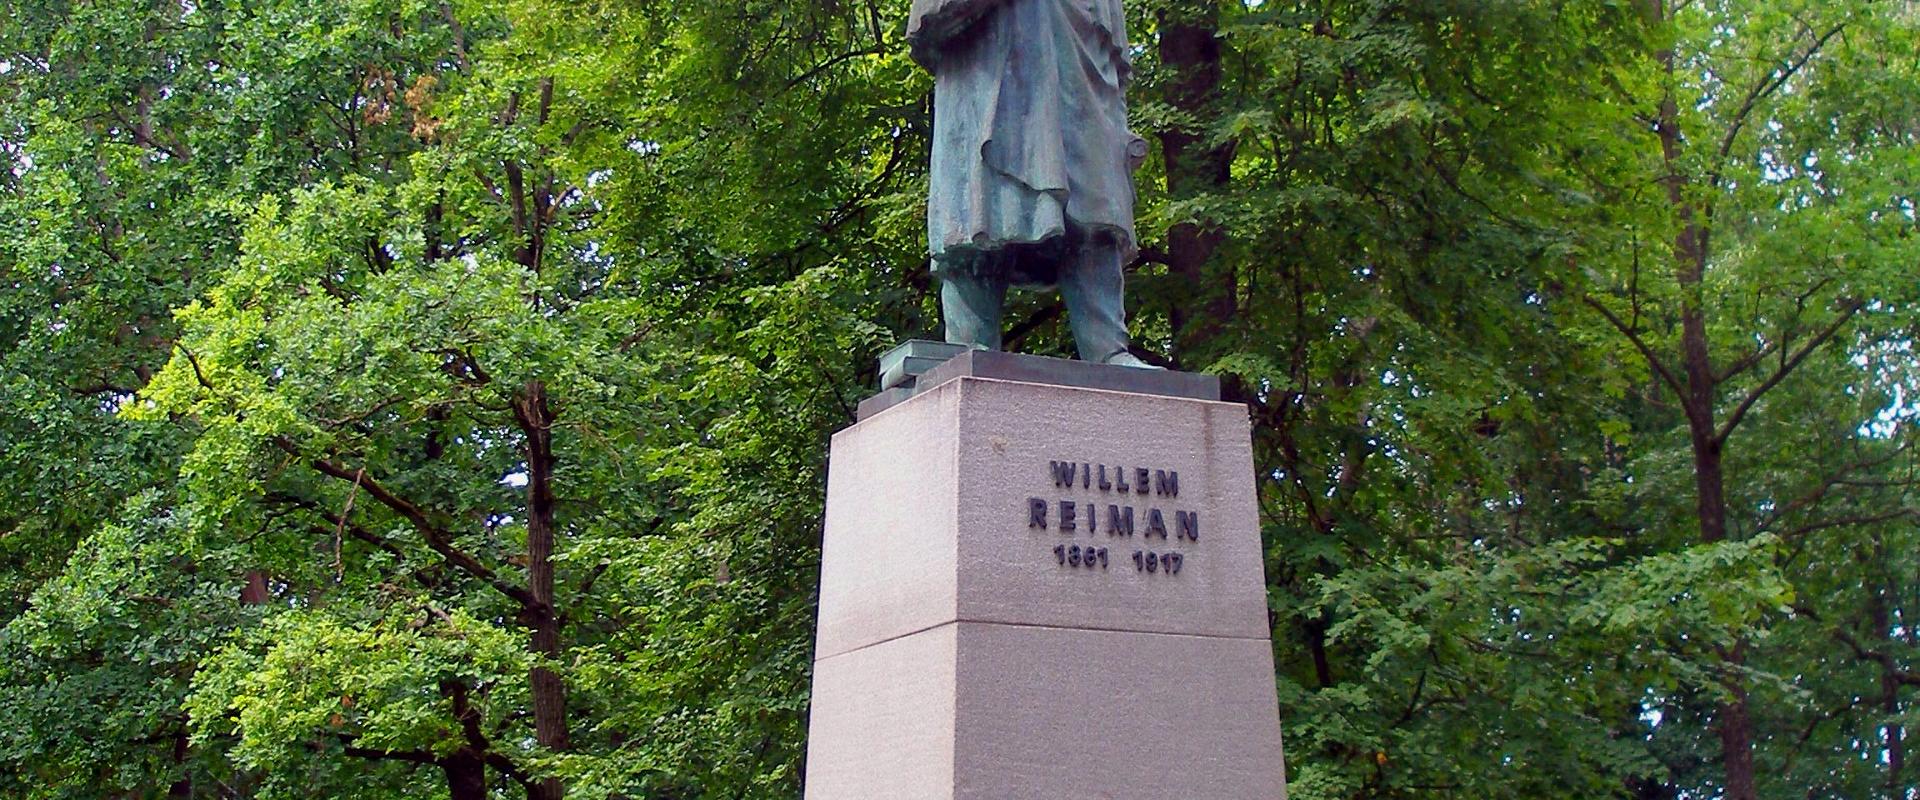 Pildil Villem Reimani monument